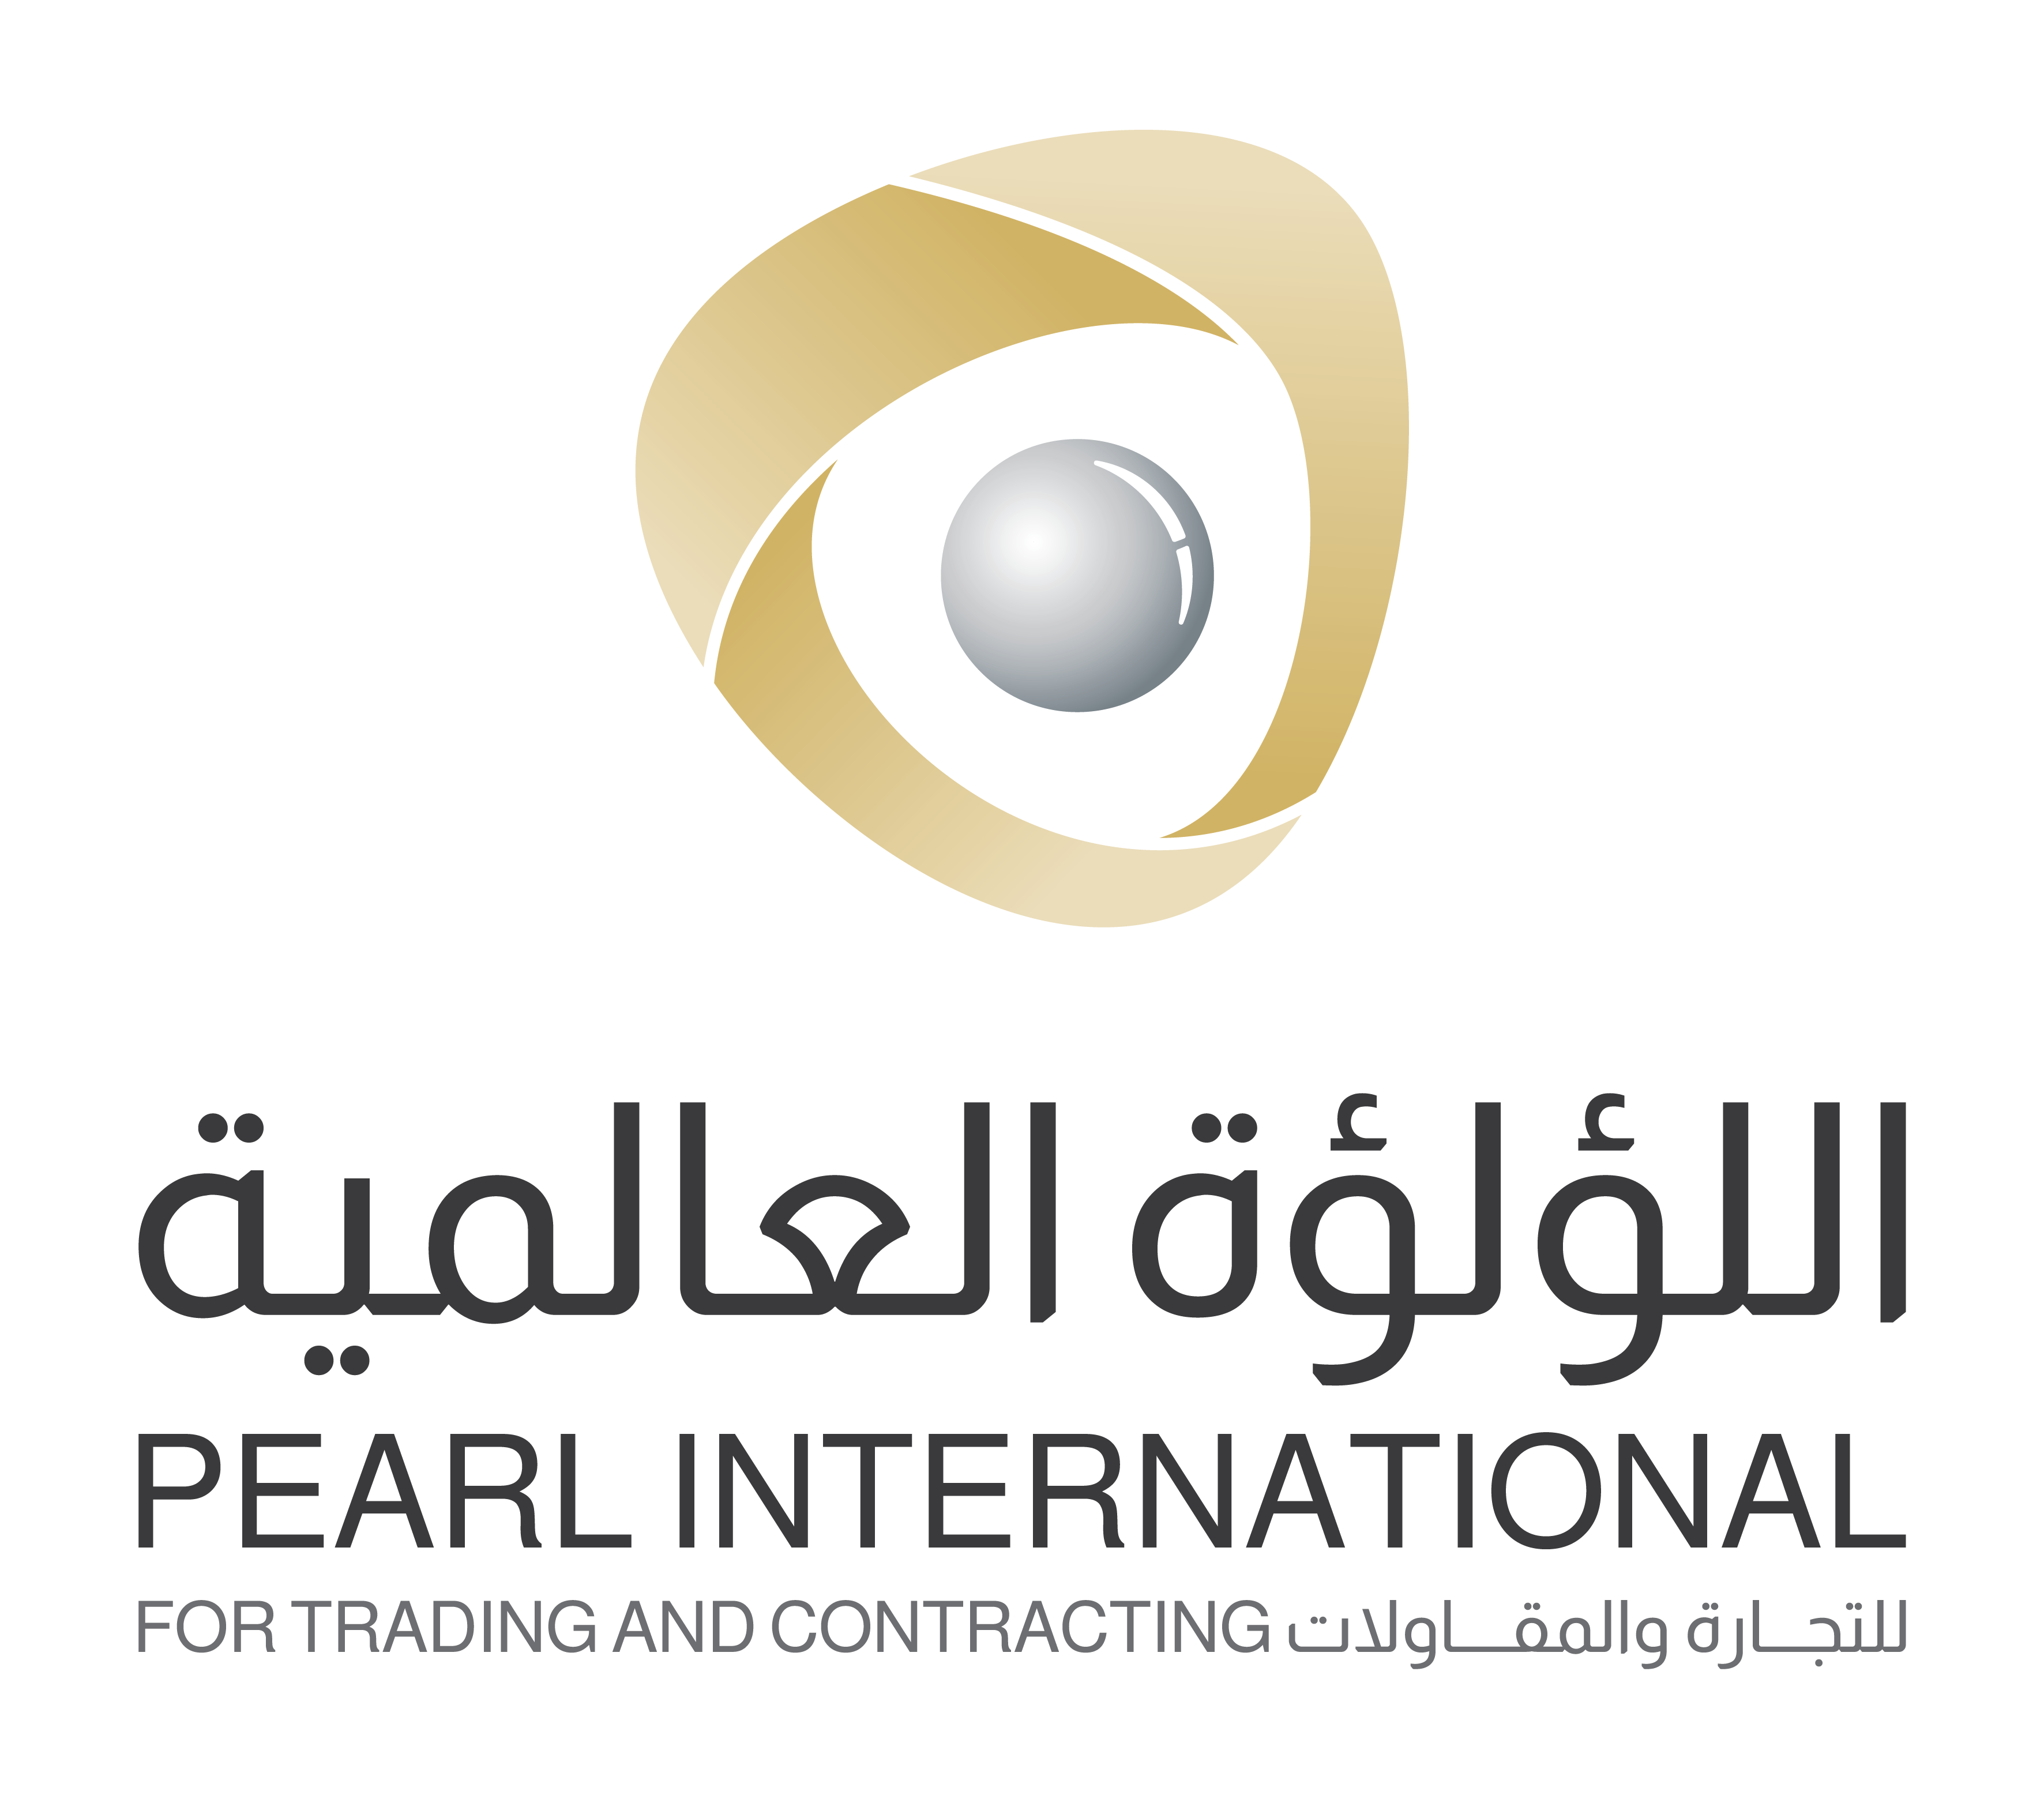 اللؤلؤة العالمية – Pearl International